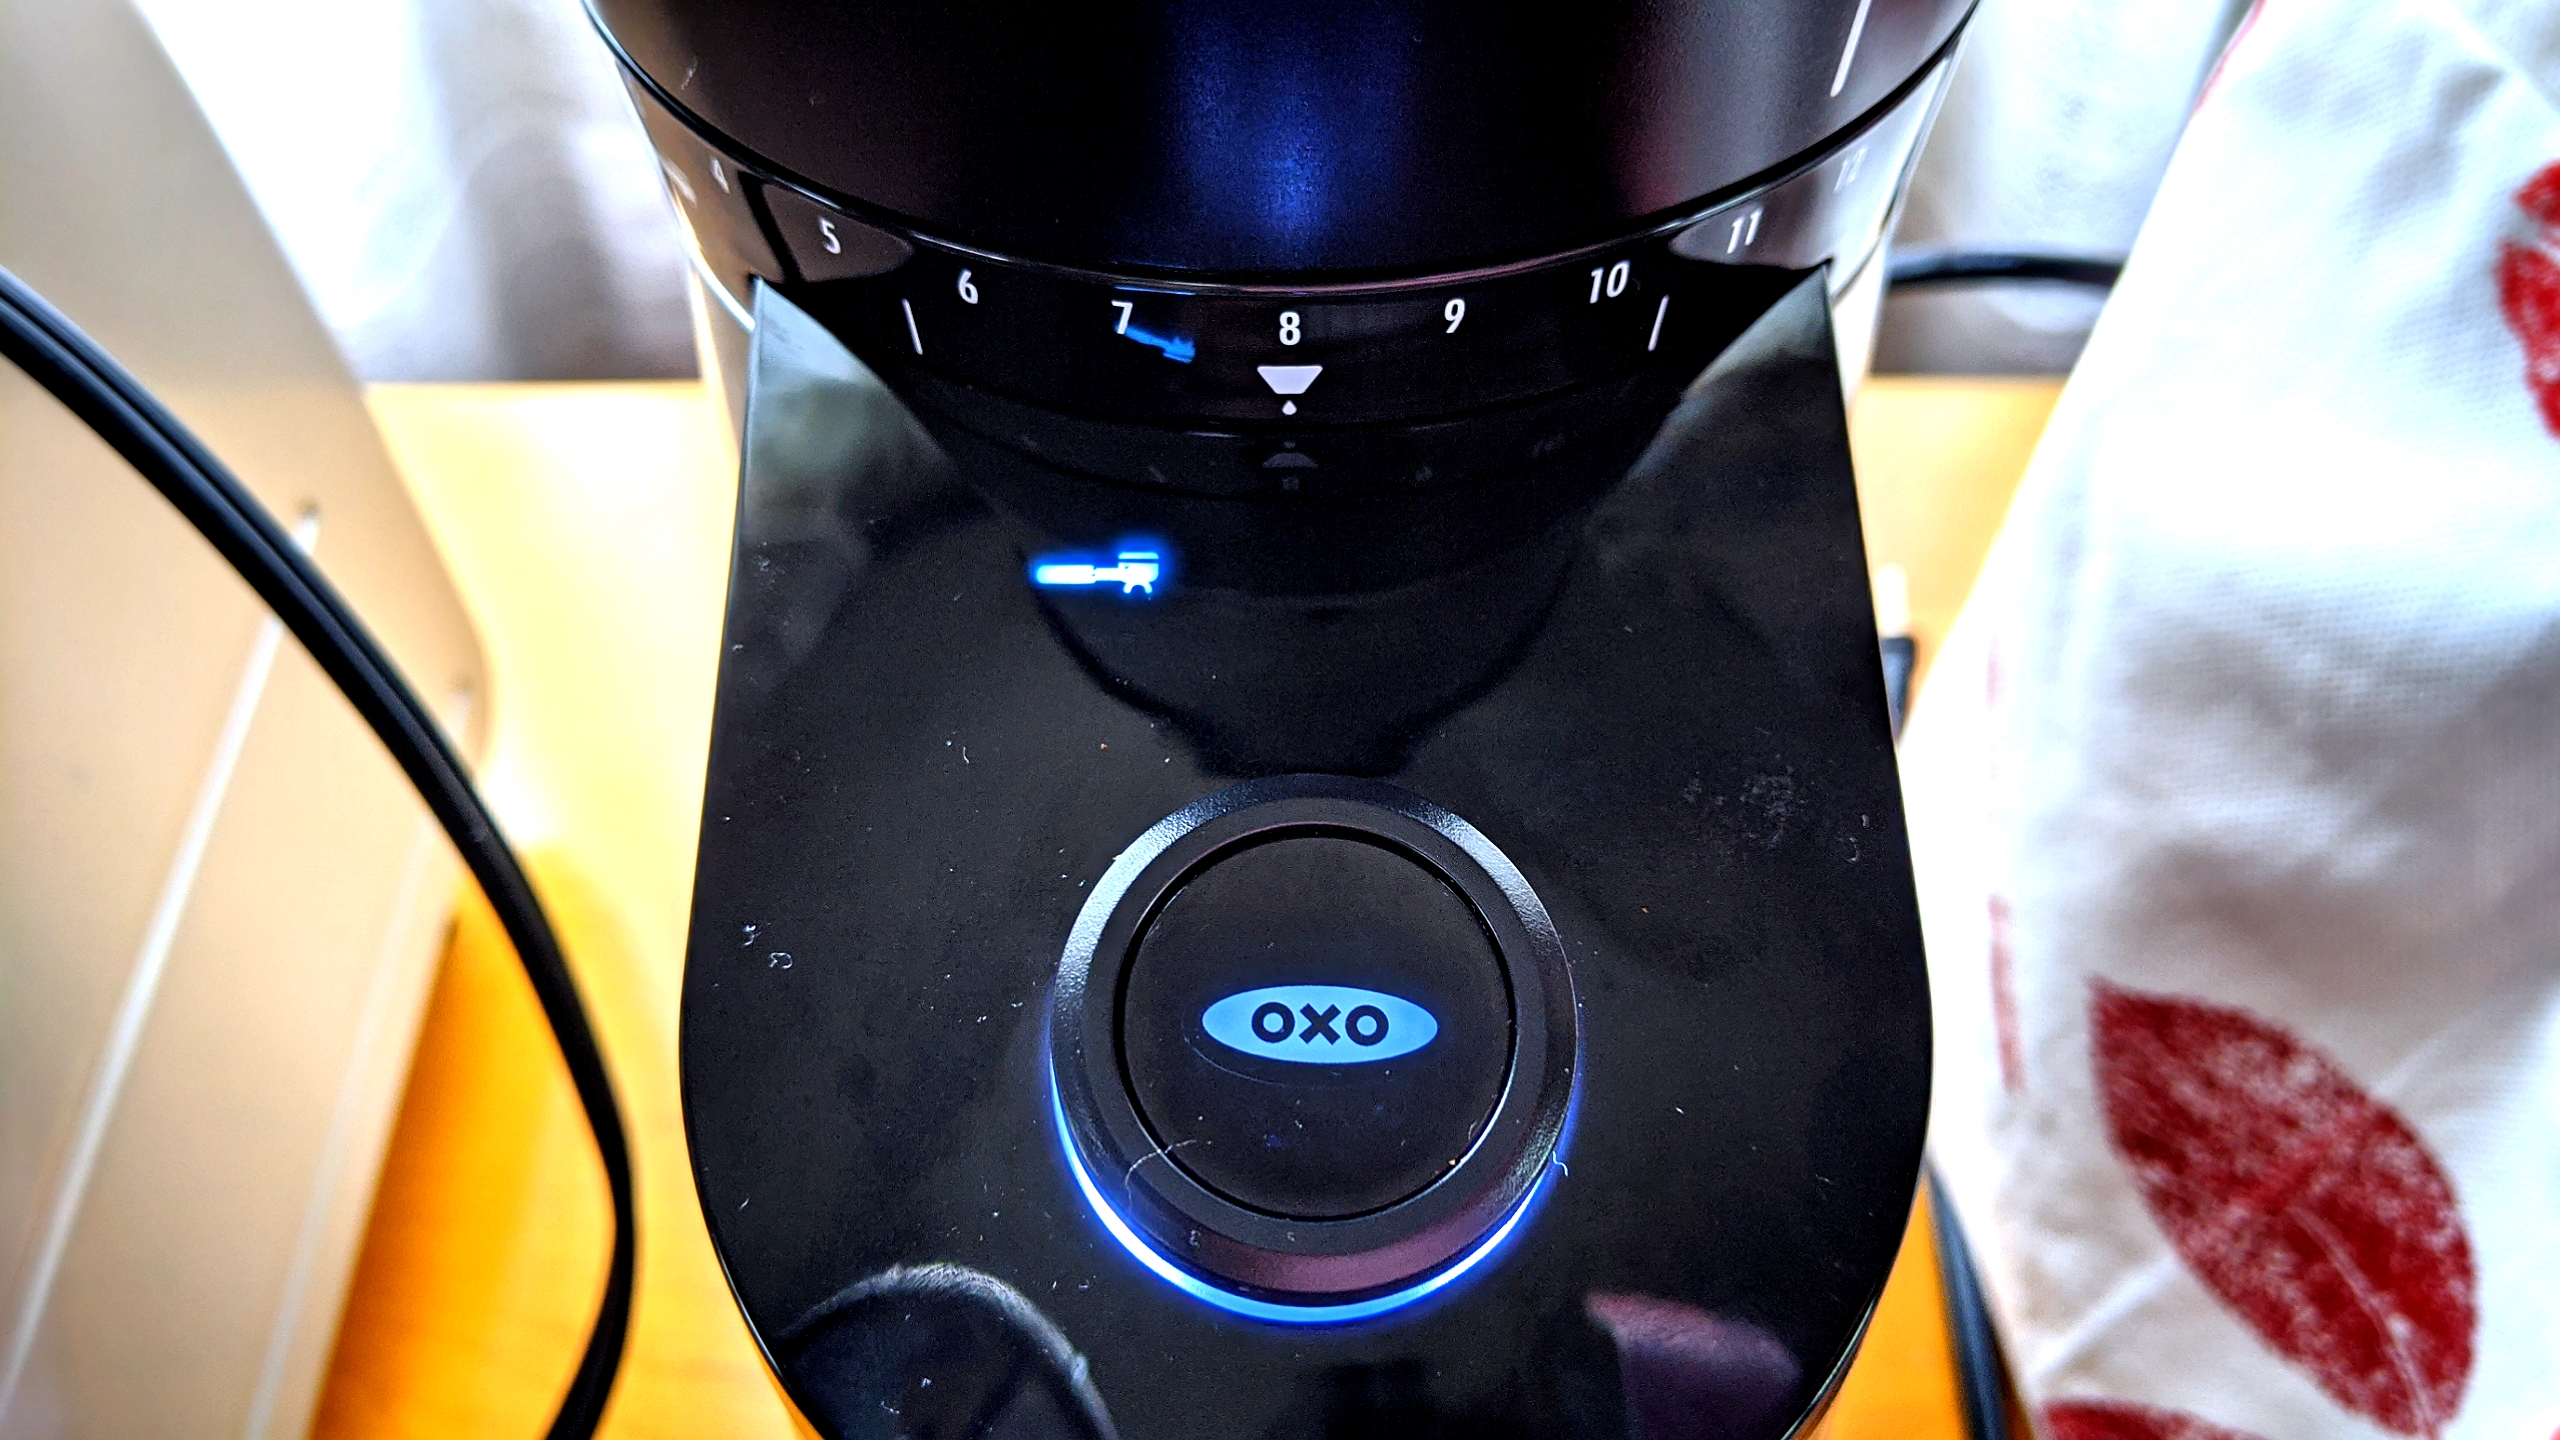 OXOの電動ミル《バリスタブレイン》を1年使った感想をご紹介